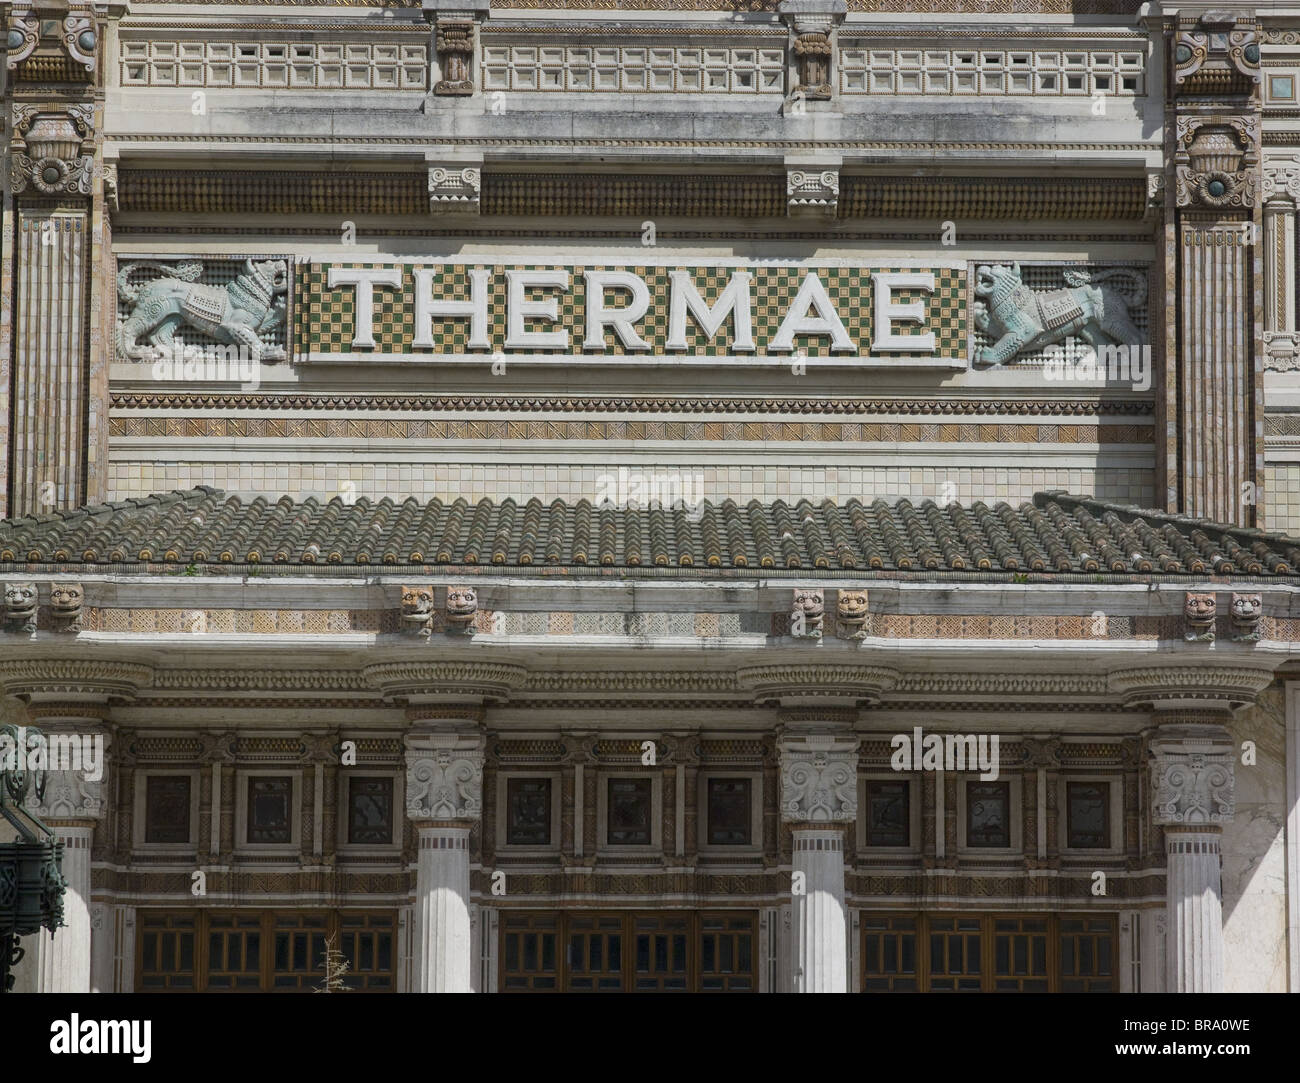 Salsomaggiore, Italie, thermes par architecte Art Nouveau Ugo Giusti. Inaugurée en 1912 a ouvert ses portes en 1923. Lettrage Thermae Banque D'Images